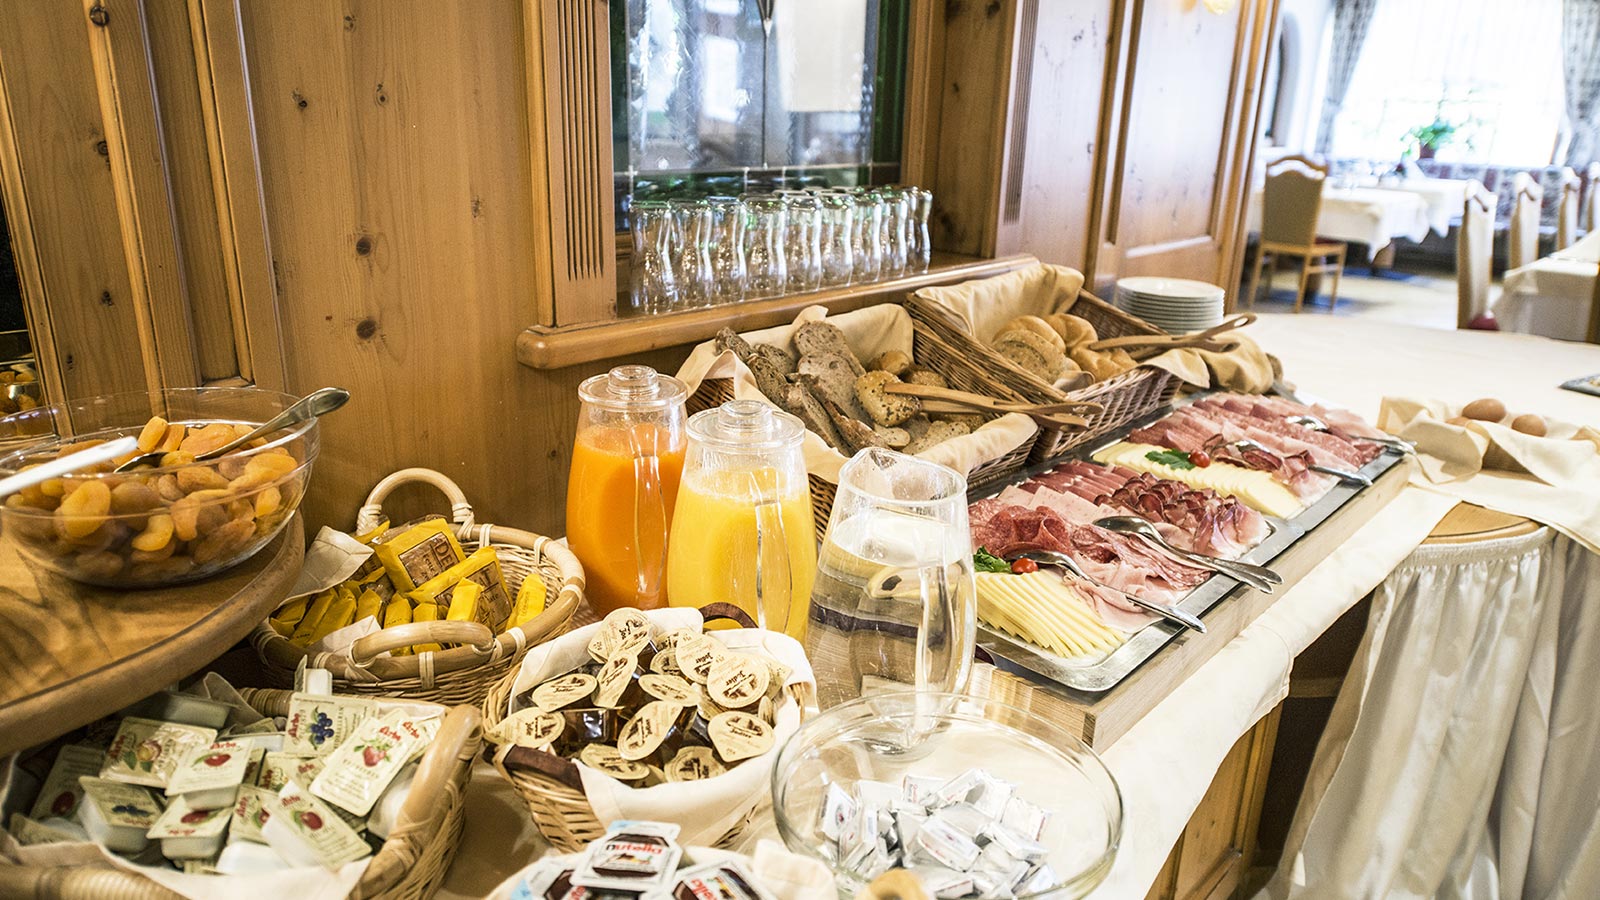 Ricco buffet della colazione presso il nostro albergo in Val Casies con numerosi succhi, dolci, affettati e marmellate